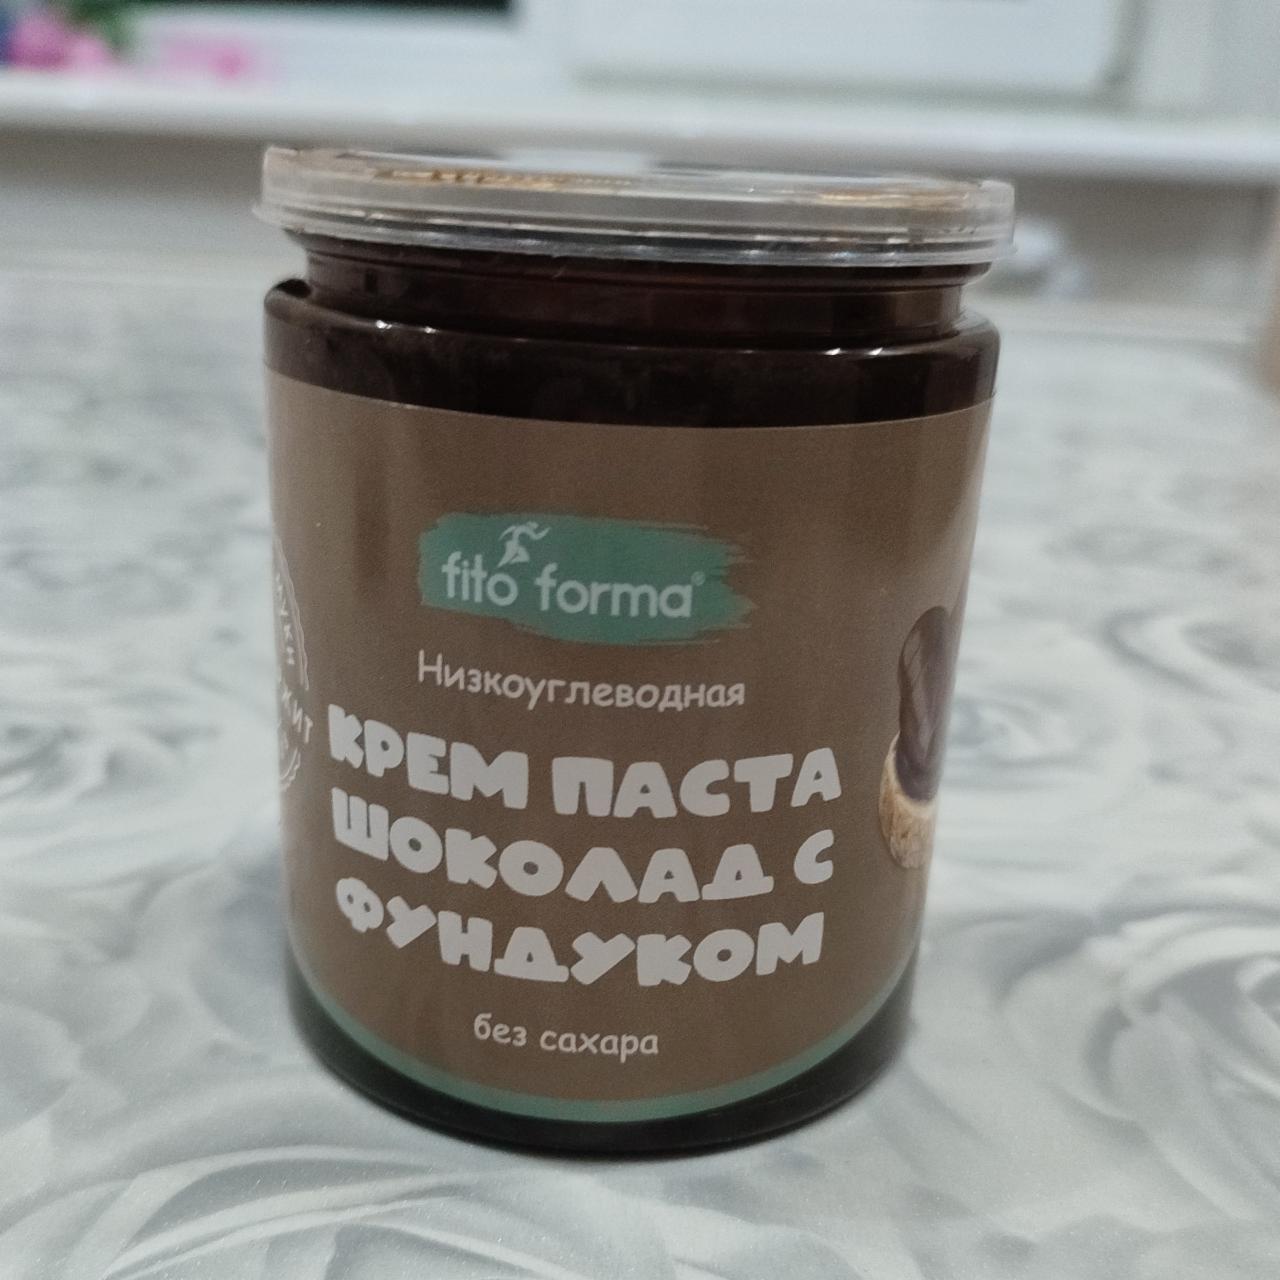 Фото - Крем паста шоколад с фундуком Fito forma